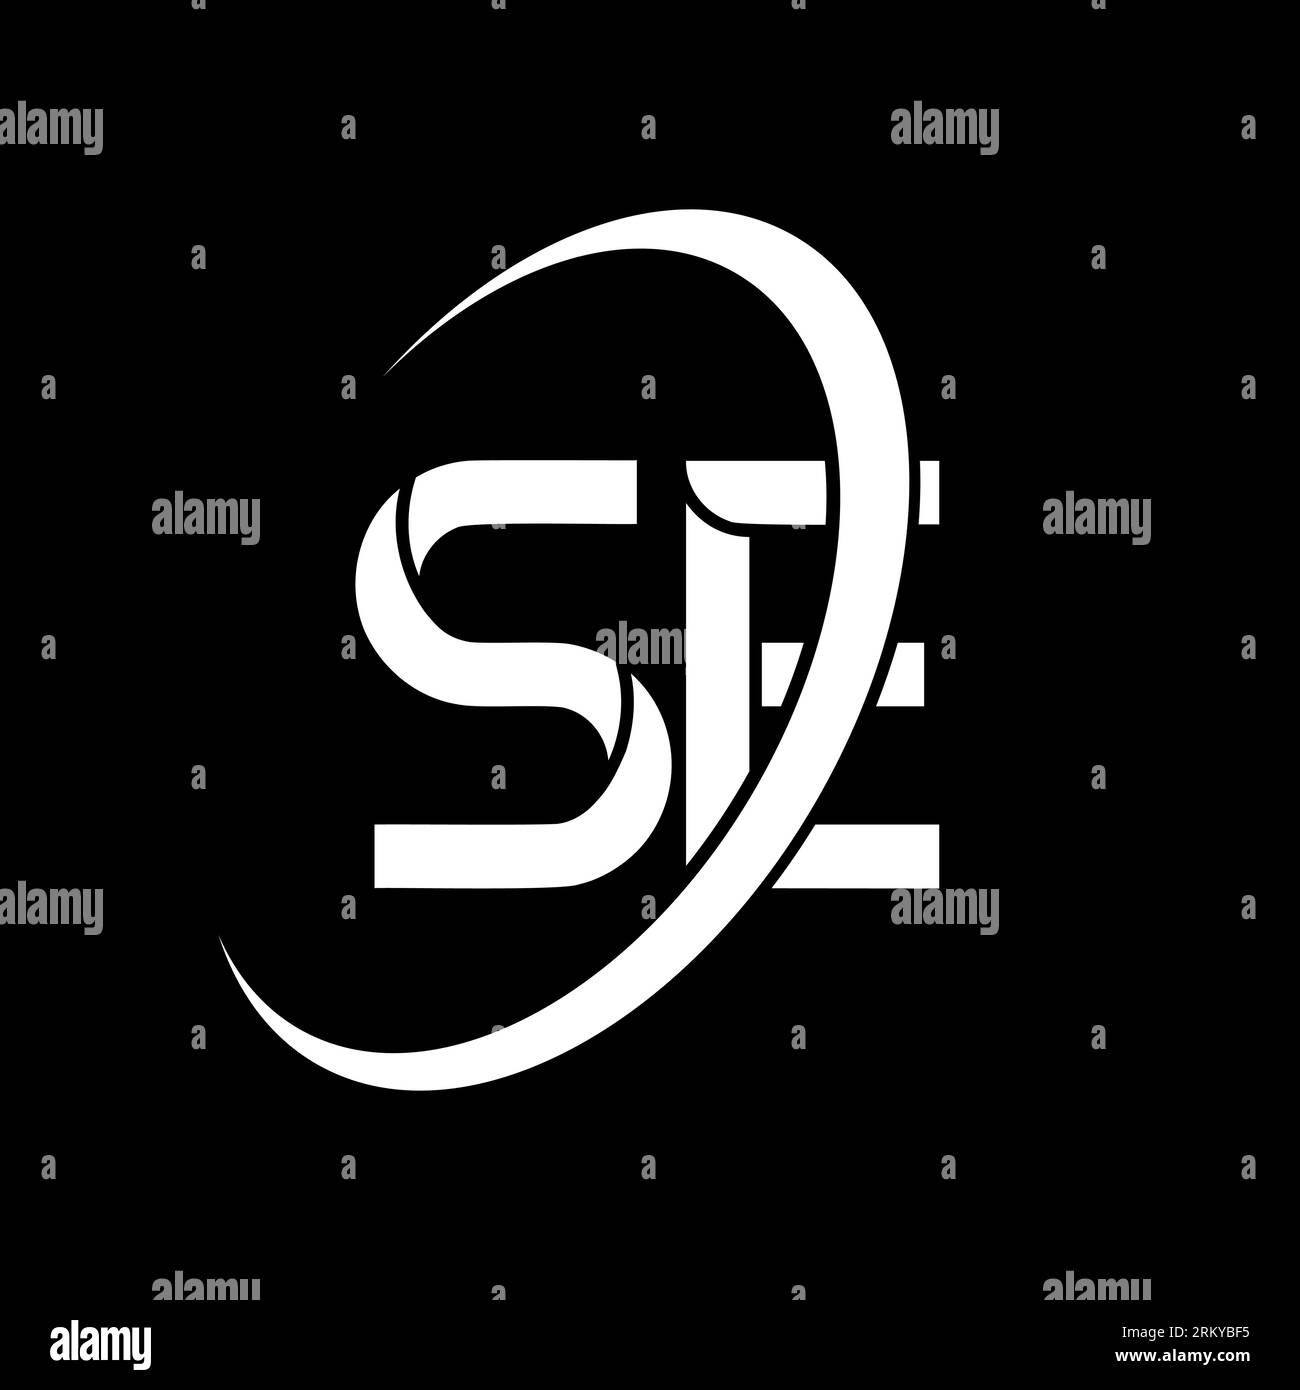 SE logo. S E design. White SE letter. SE/S E letter logo design. Initial letter SE linked circle uppercase monogram logo. Stock Vector